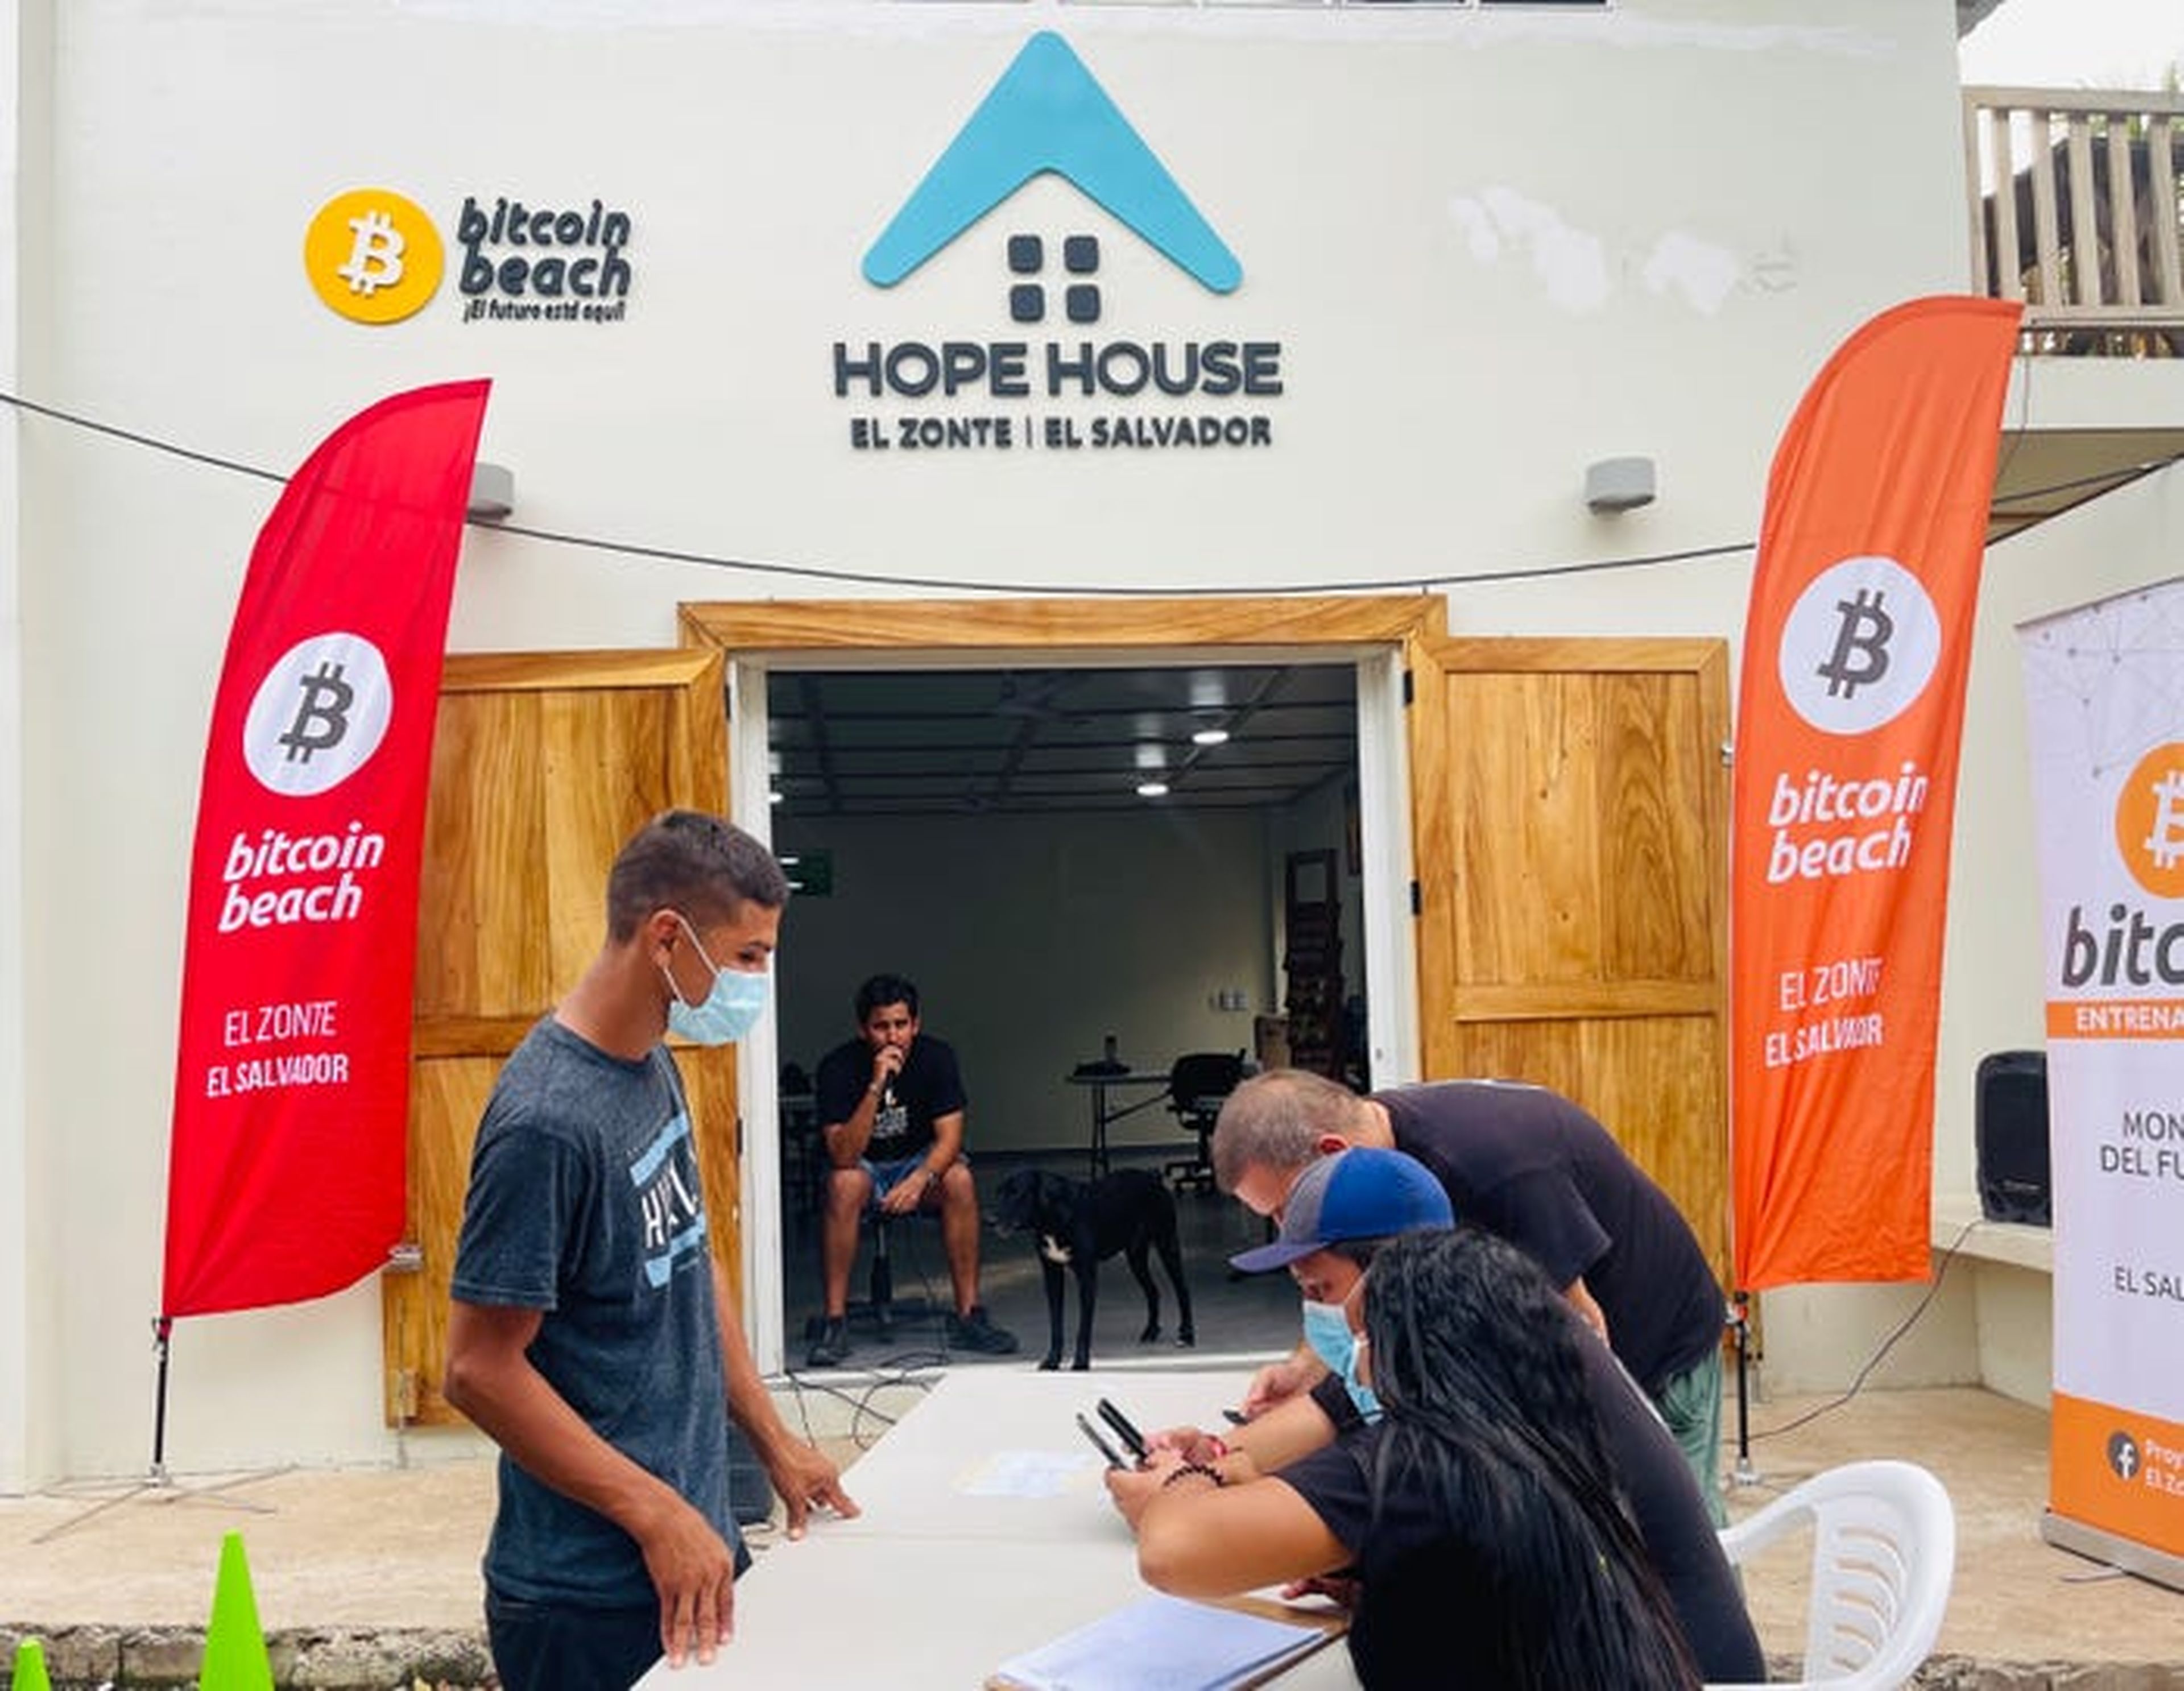 Hope House, un "espacio de trabajo compartido" en Bitcoin Beach.